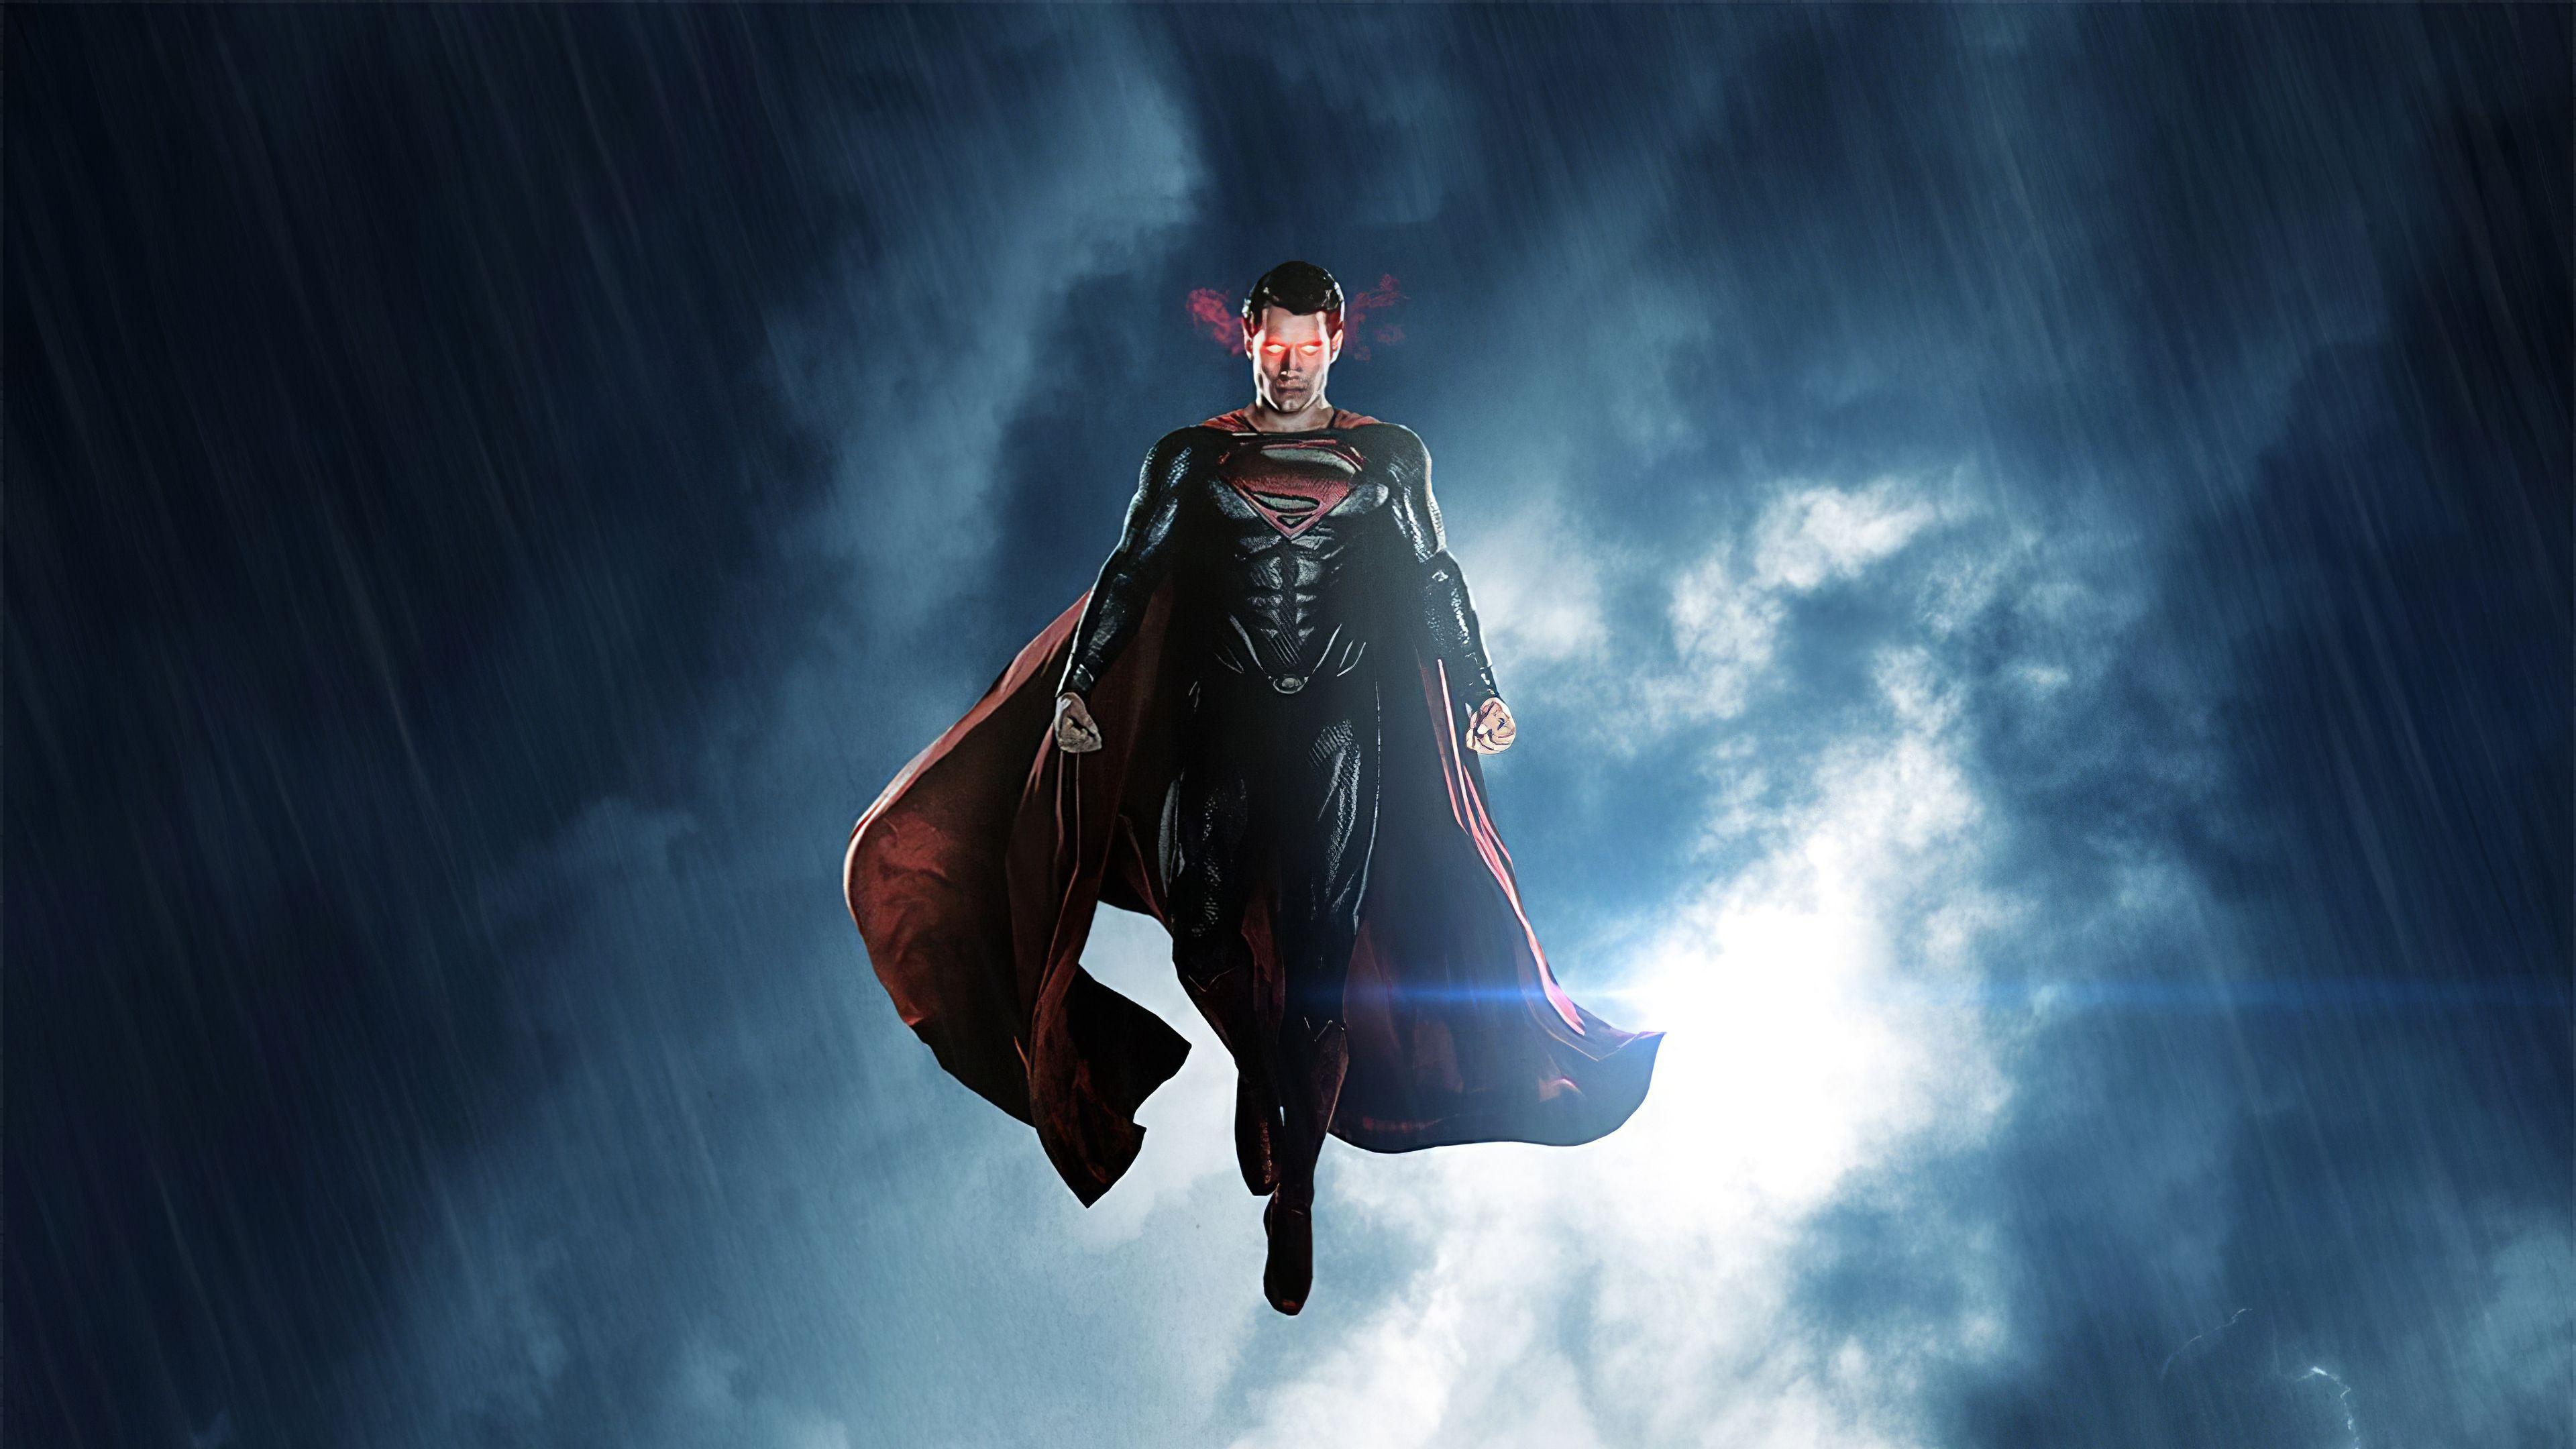 دانلود عکس هنری کویل در نقش سوپرمن برای چاپ پوستر اتاق نوجوان 